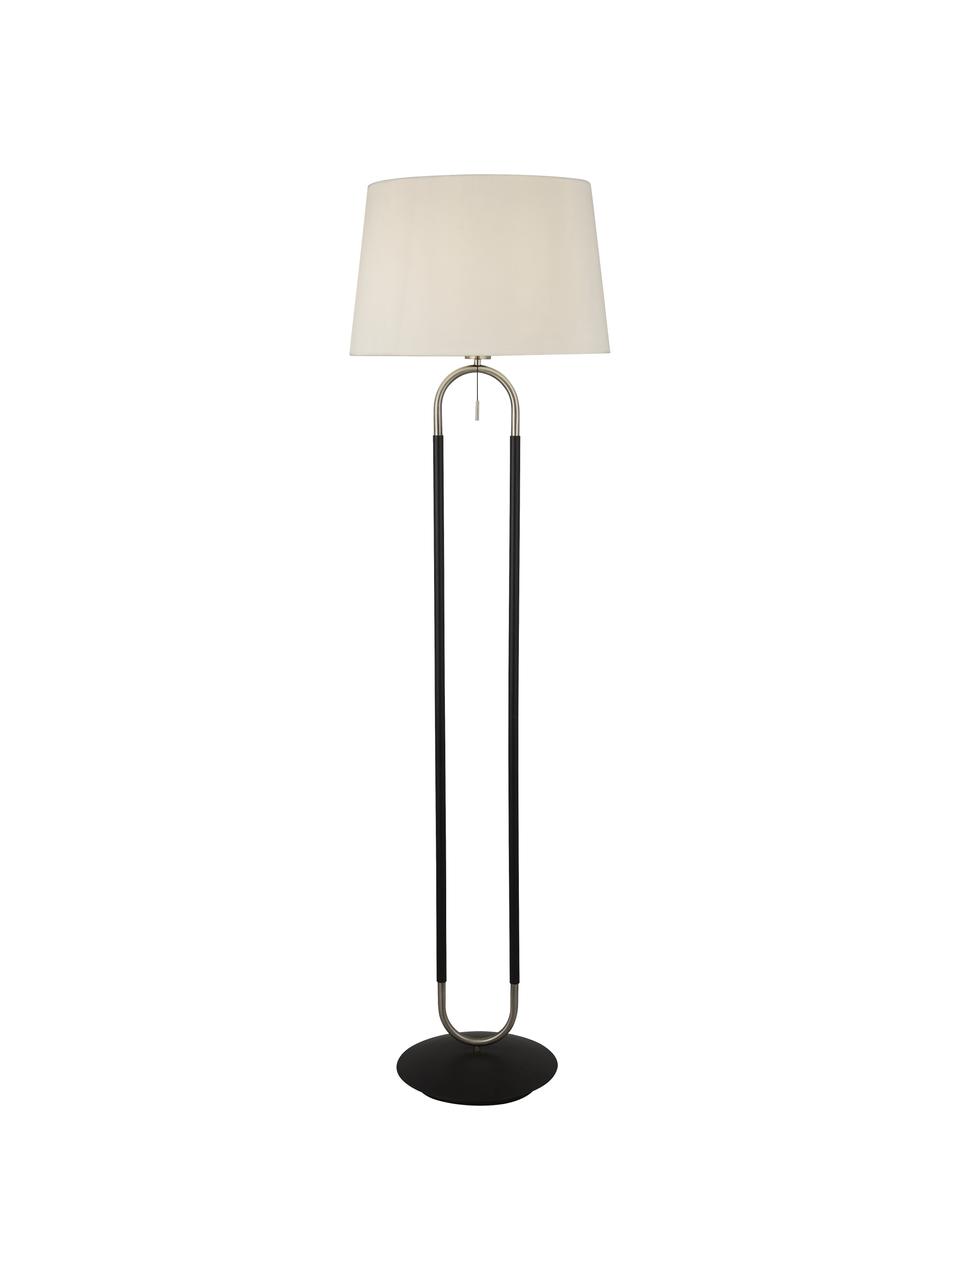 Vloerlamp Satina met fluwelen lampenkap, Lampenkap: fluweel, Lampvoet: staal, Wit, zwart, zilverkleurig, Ø 45 x H 161 cm